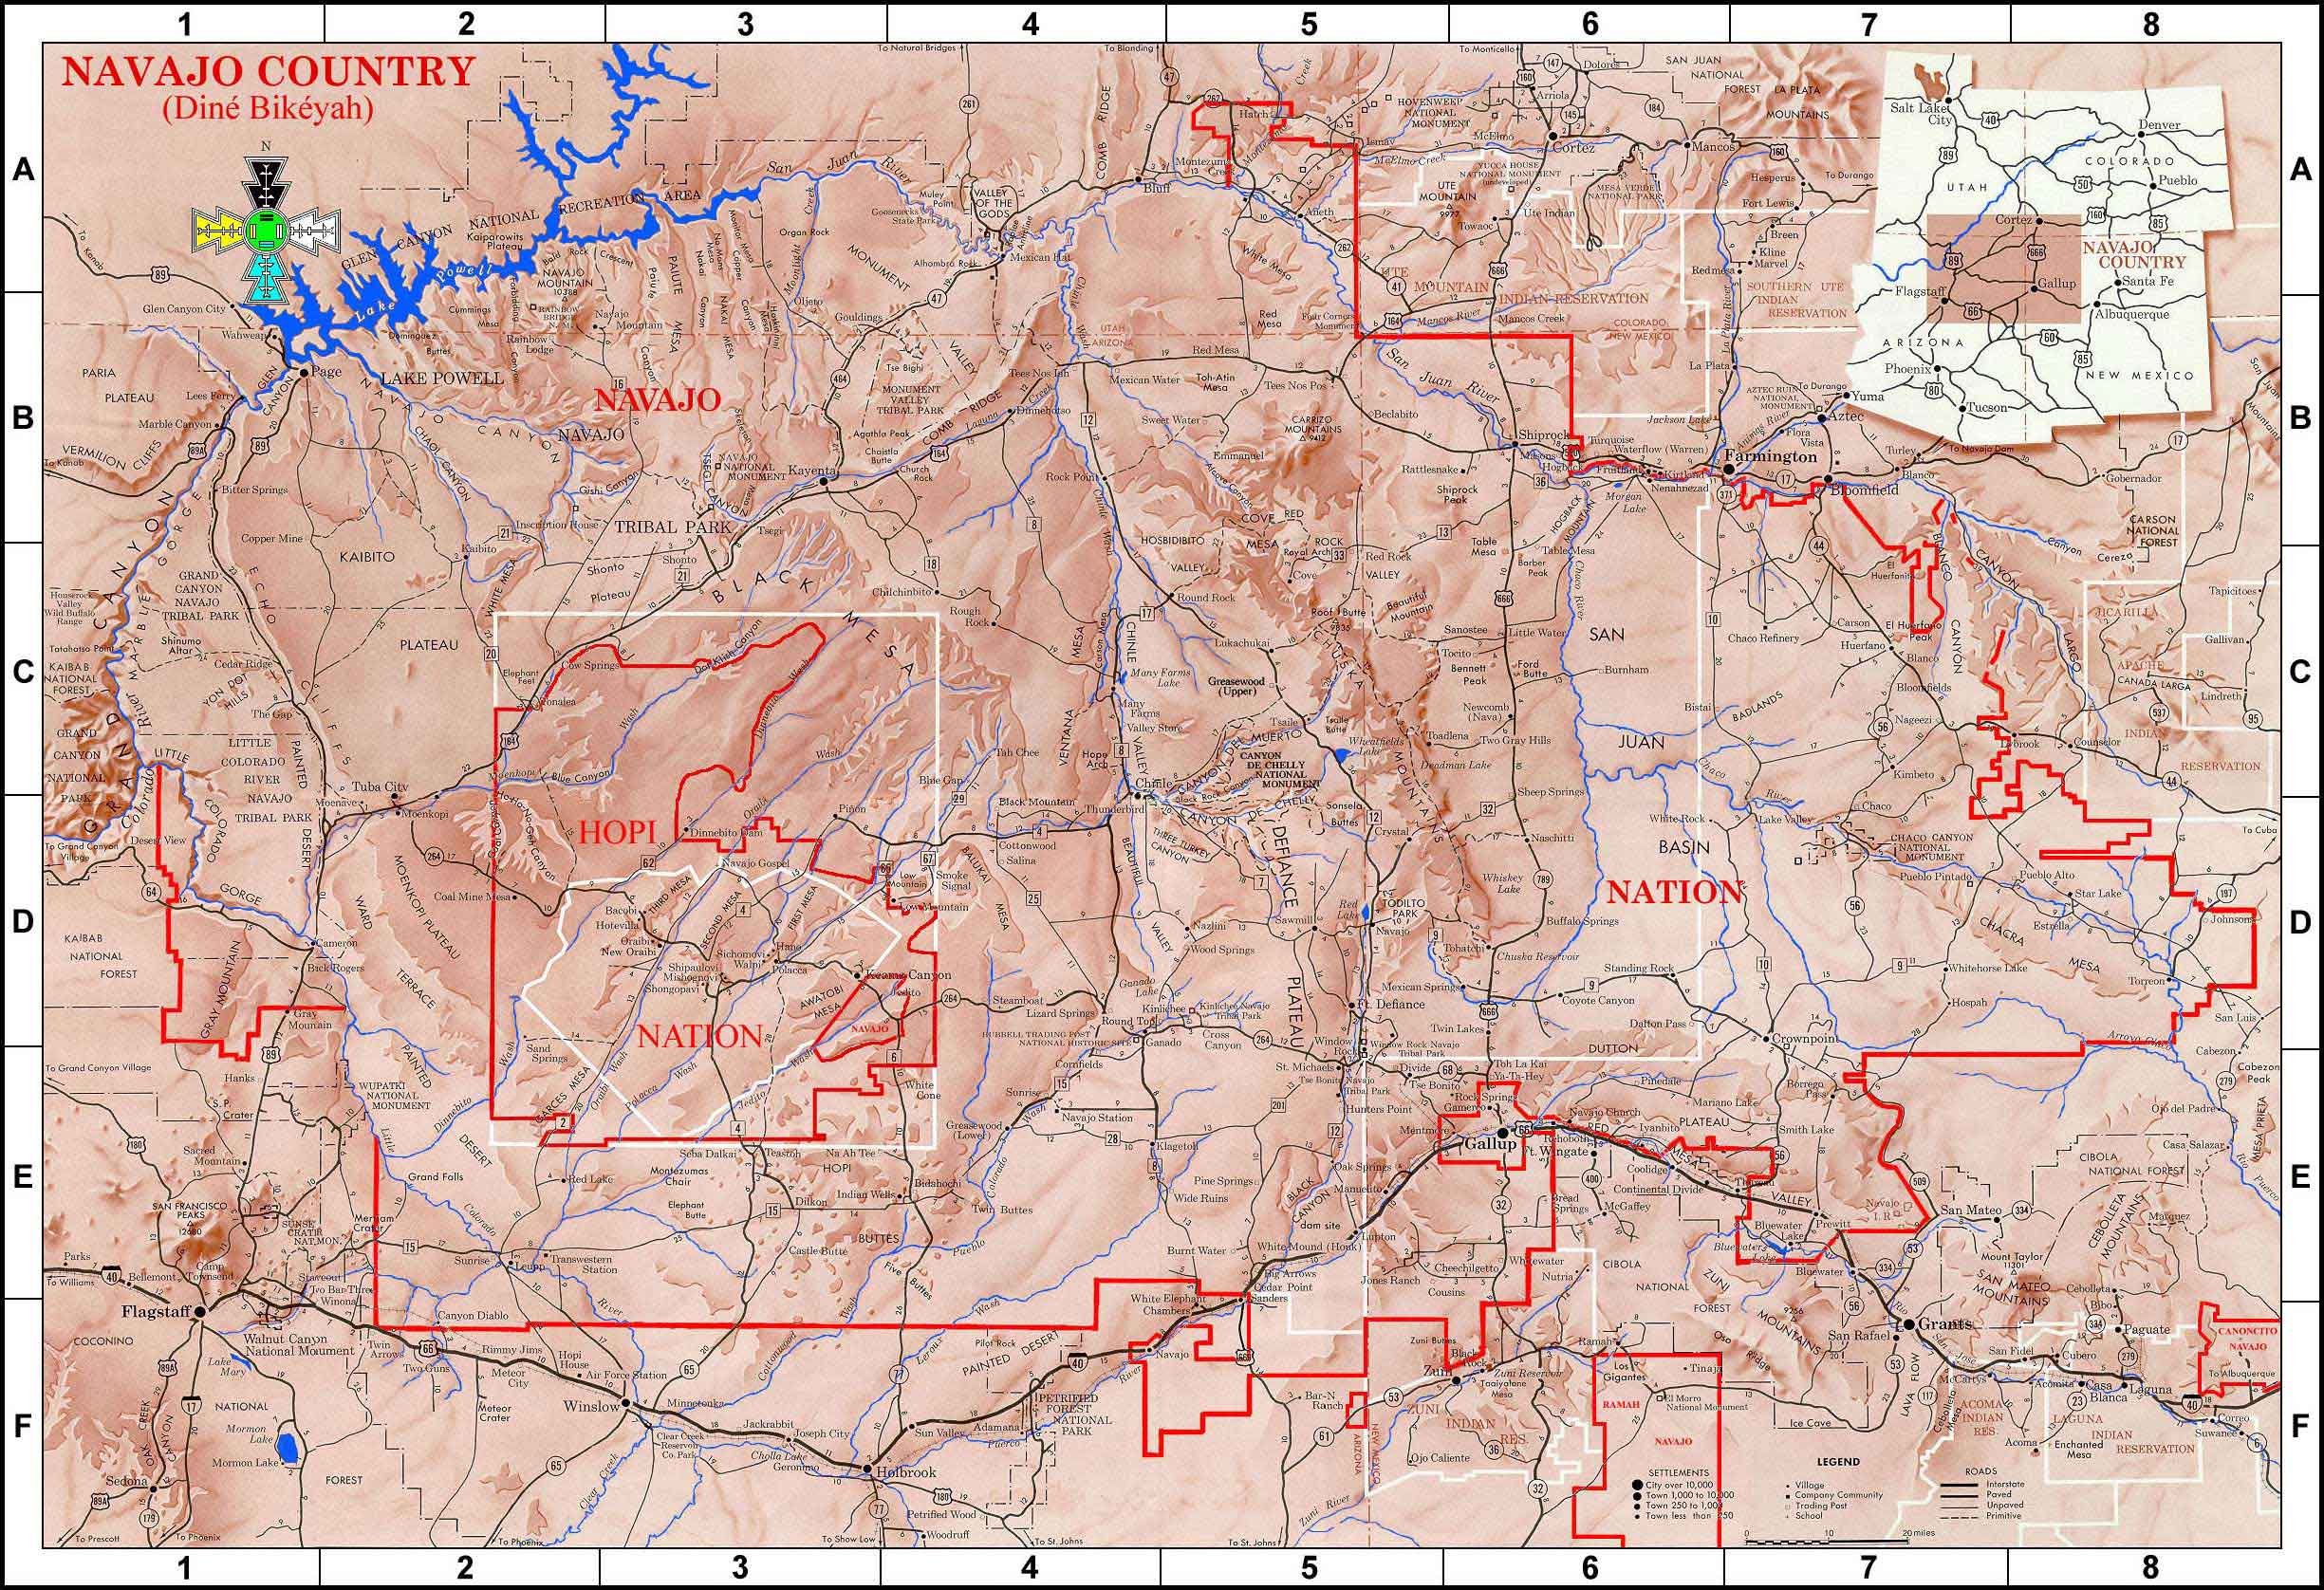 territoire navajo - carte originale